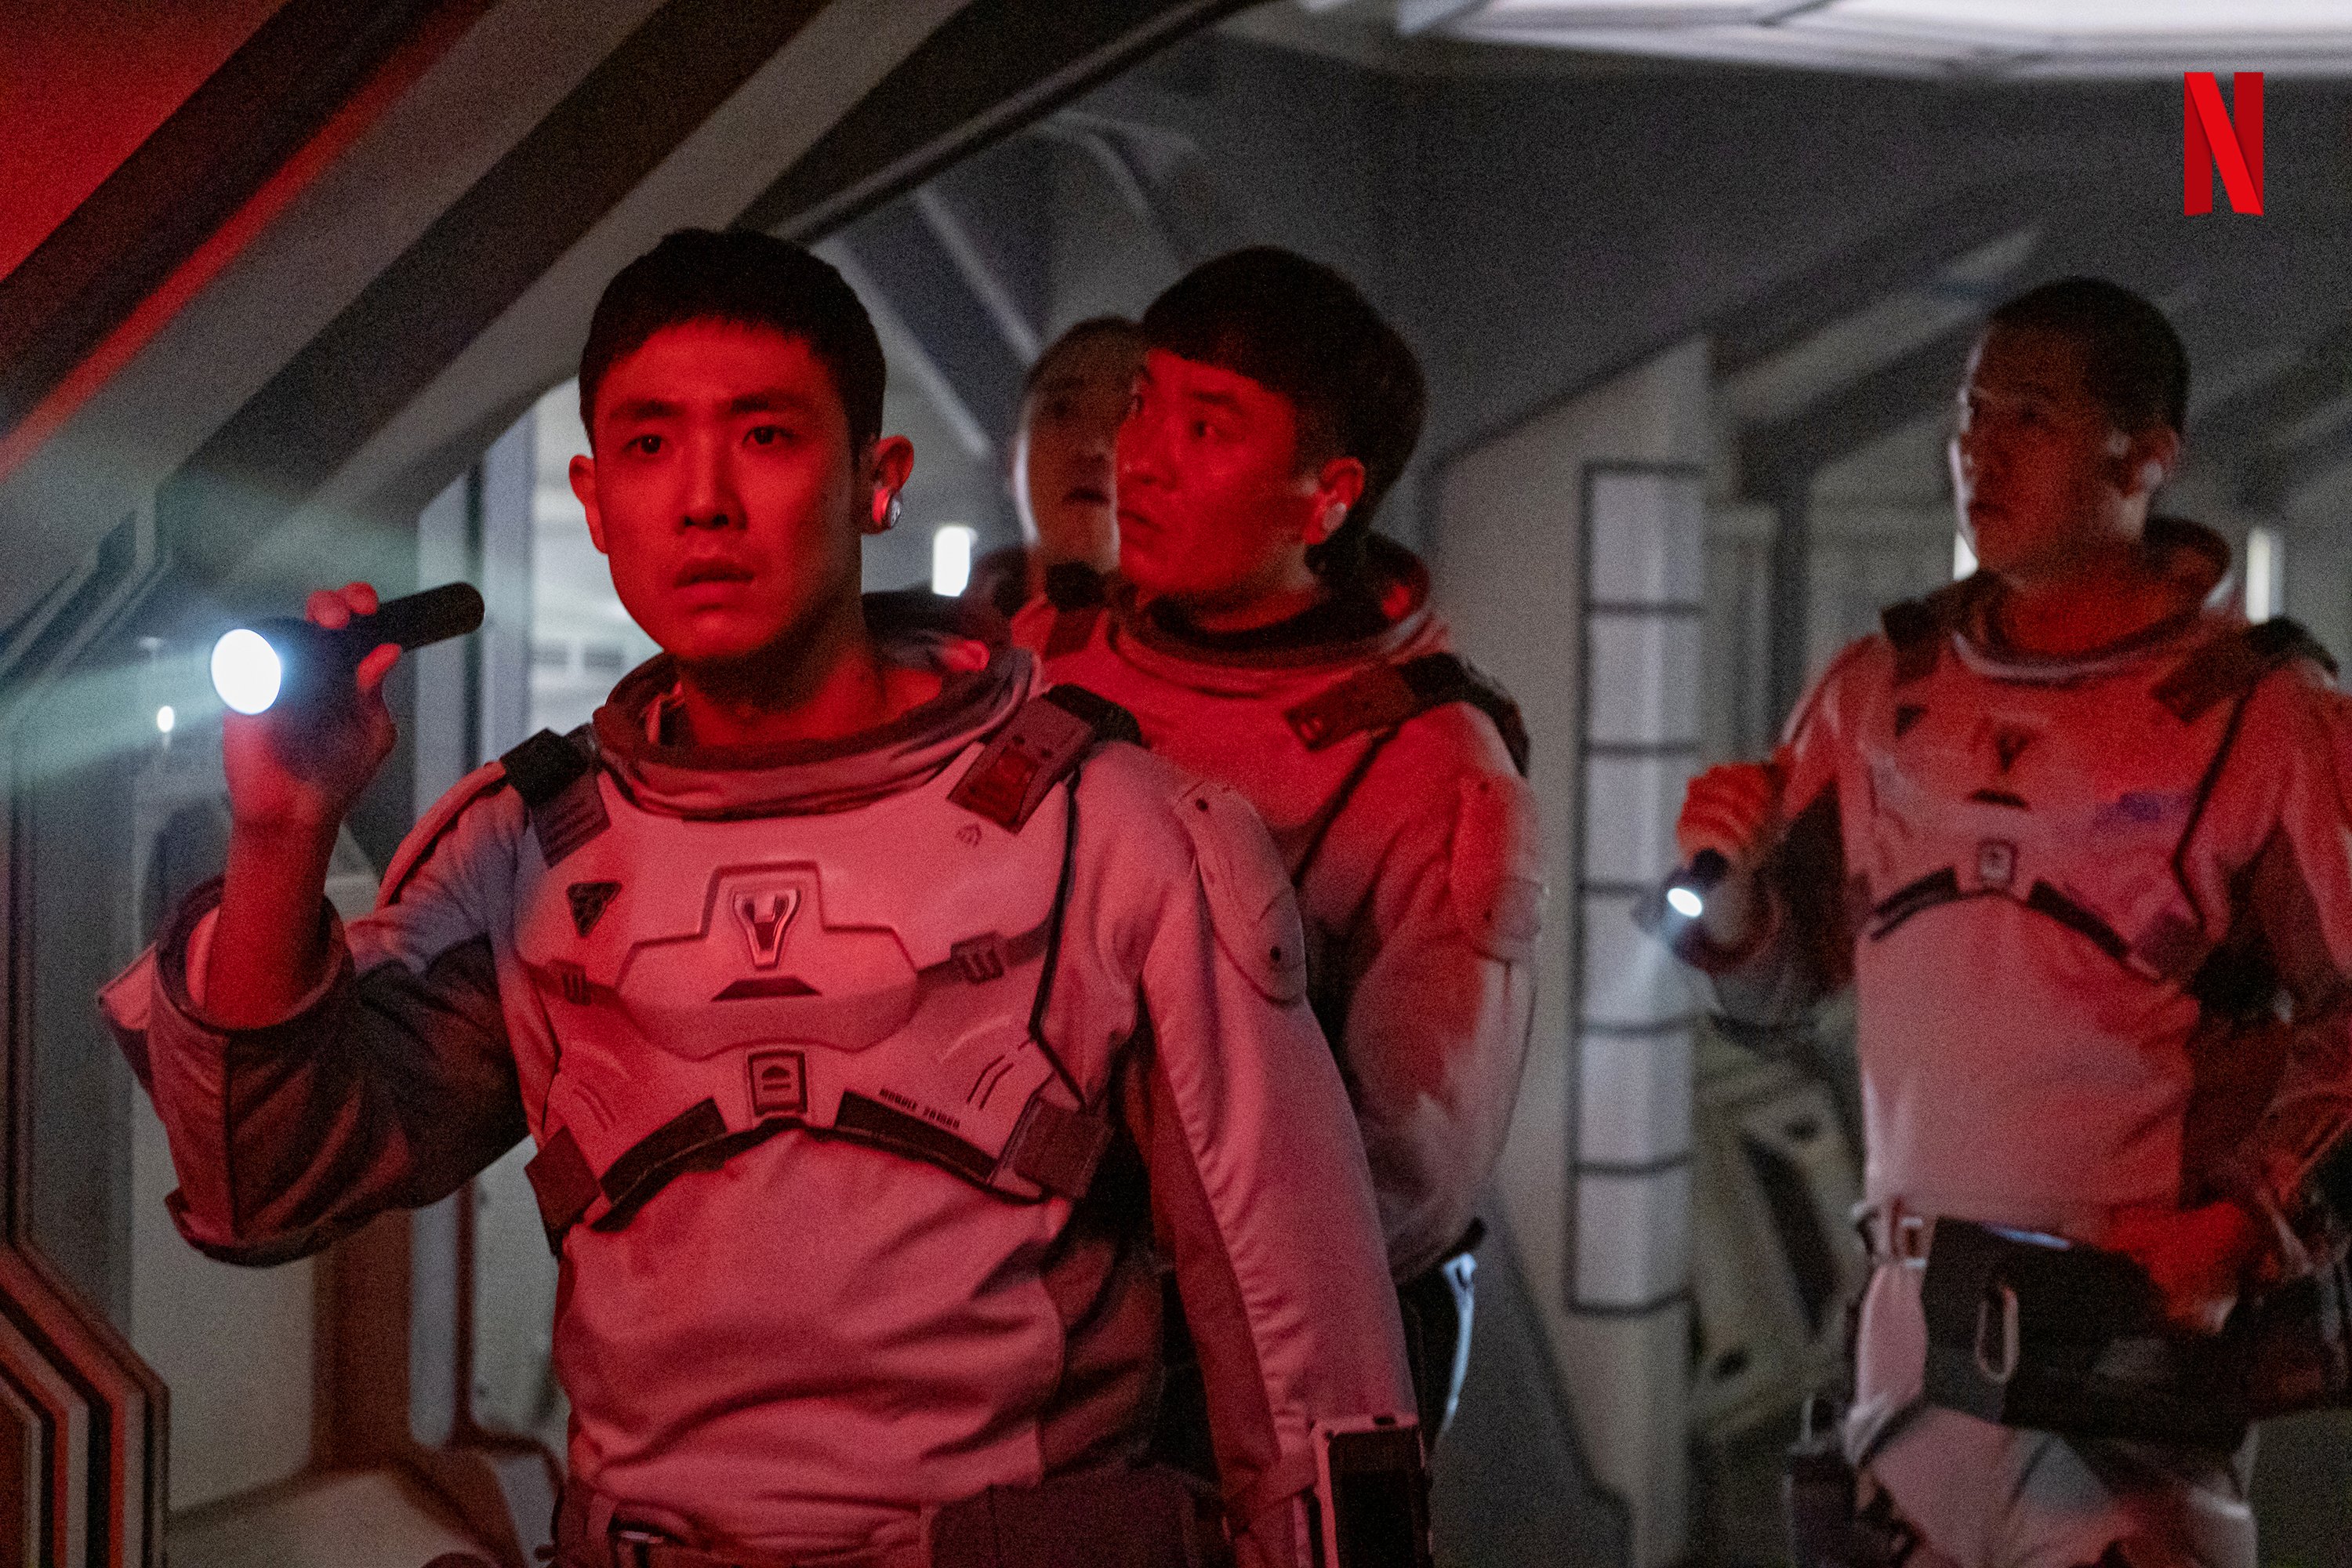 รีวิวซีรีส์ The Silent Sea ทะเลสงัด ผลงาน Sci-Fi อวกาศสัญชาติเกาหลีนำแสดงโดย กงยู, แบดูนา และ อีจุน